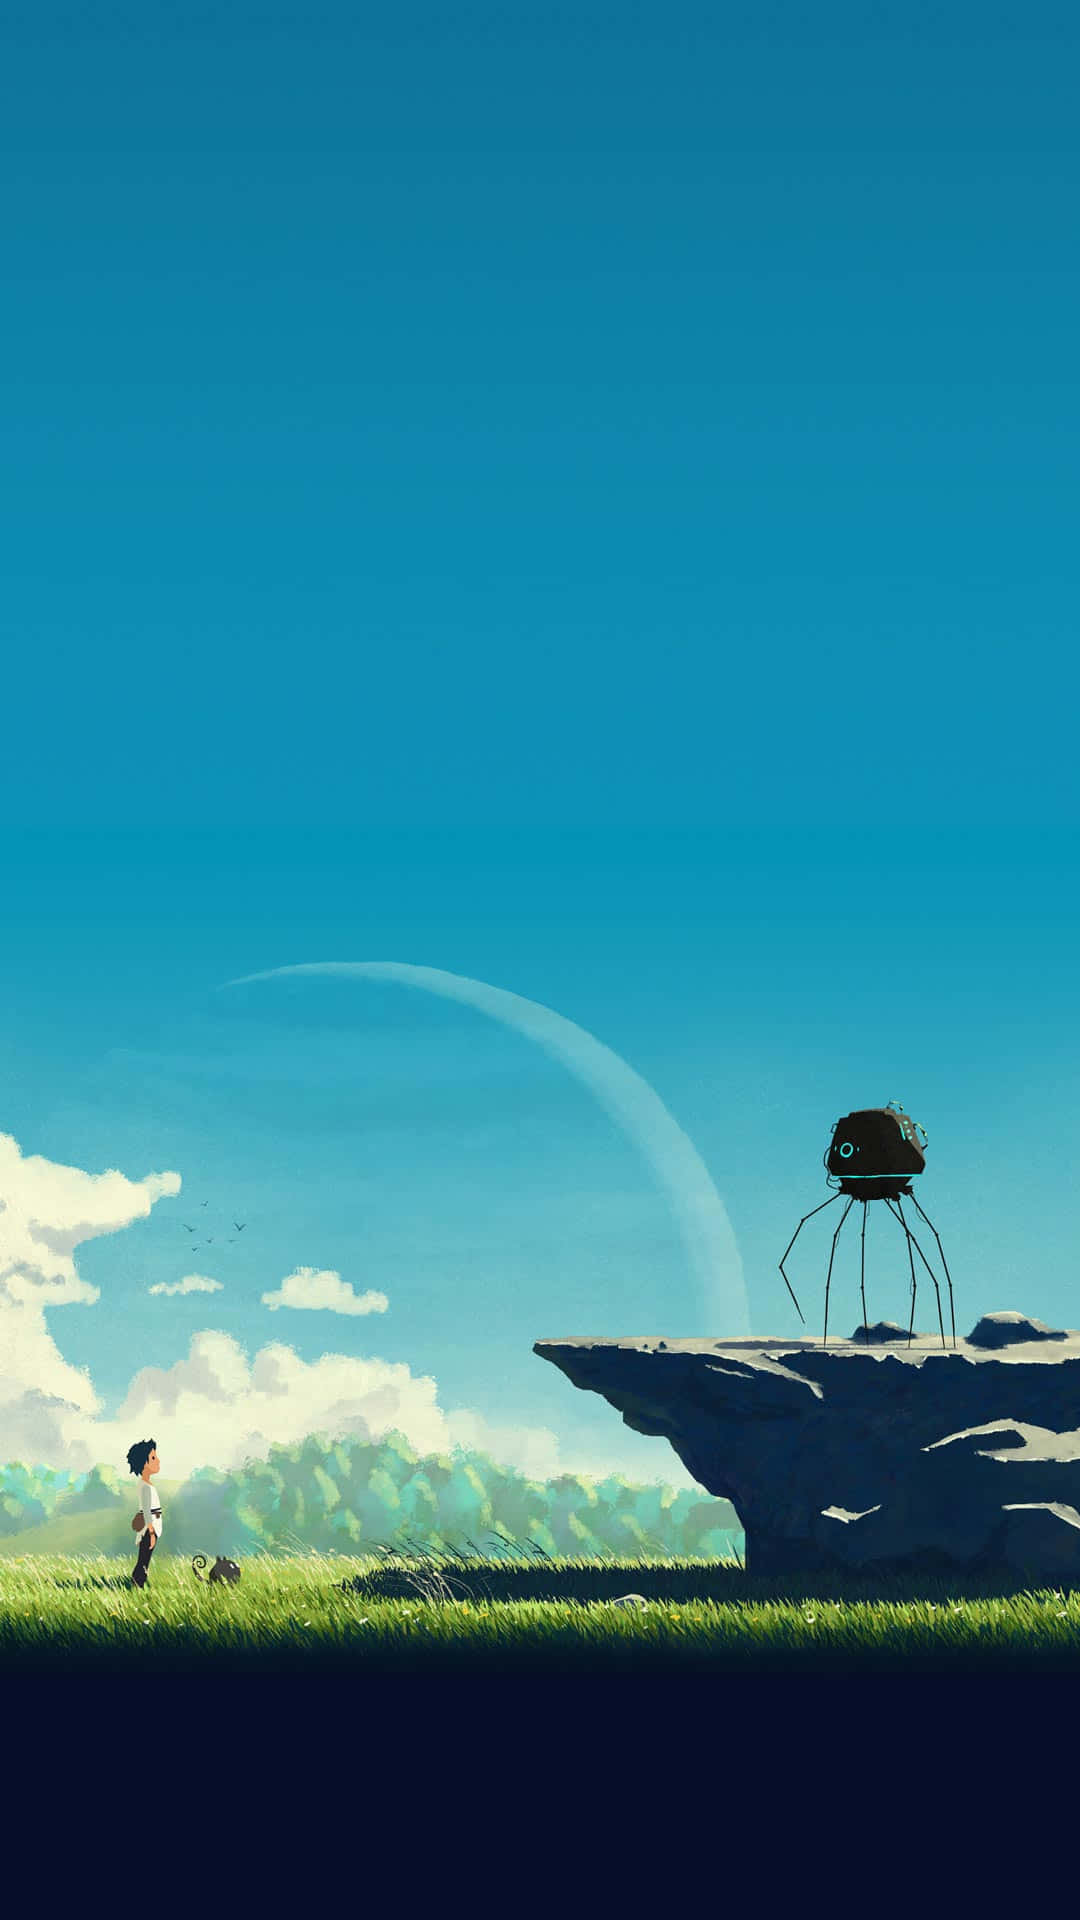 Ottieniora Il Telefono Unico Studio Ghibli E Vivi L'esperienza Della Bellezza Dell'animazione Classica Come Mai Prima D'ora. Sfondo